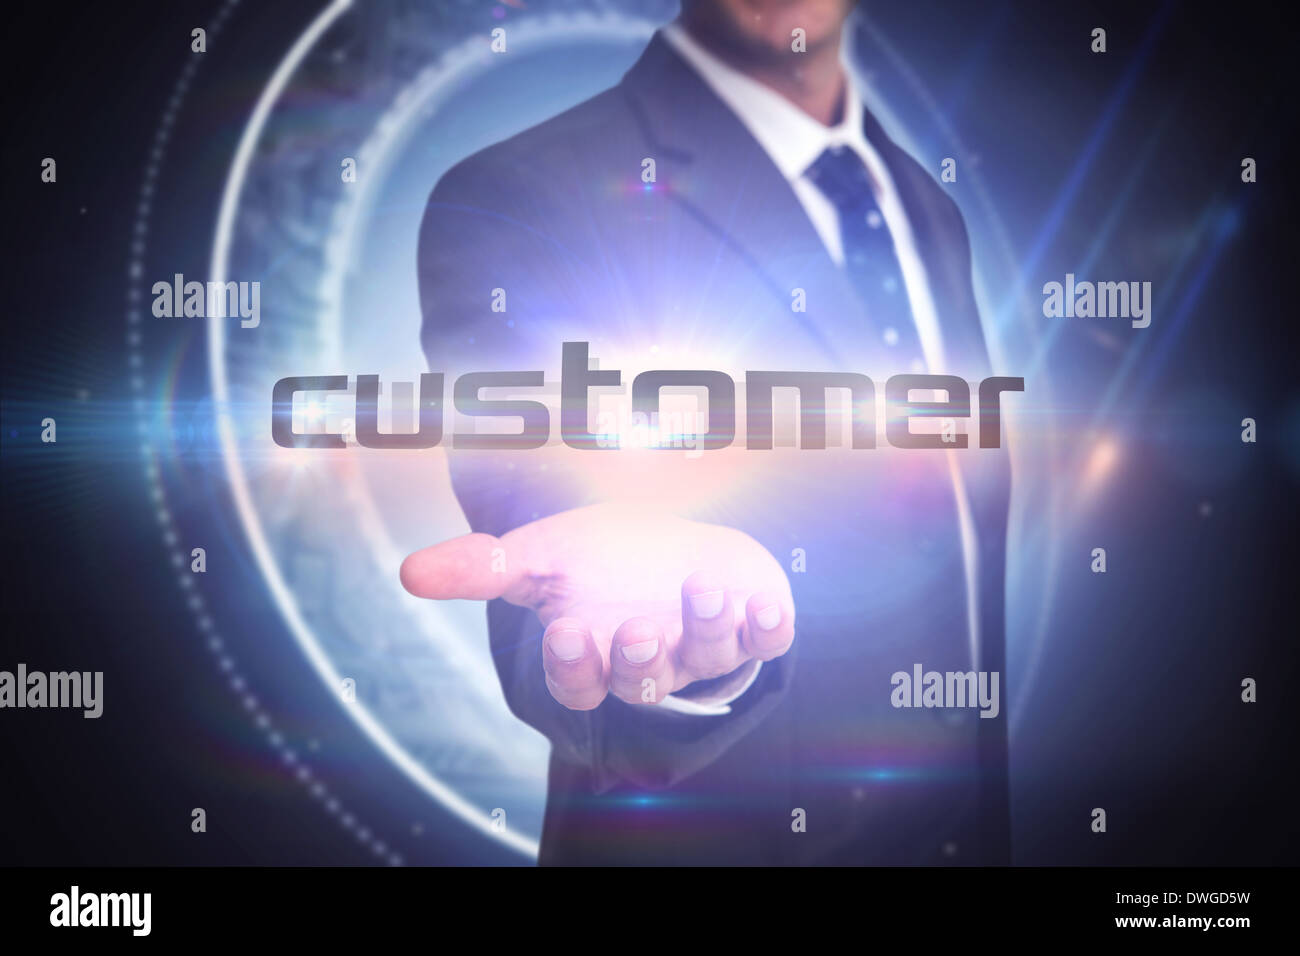 Kunden gegen leuchtenden Kreis auf schwarzem Hintergrund Stockfoto